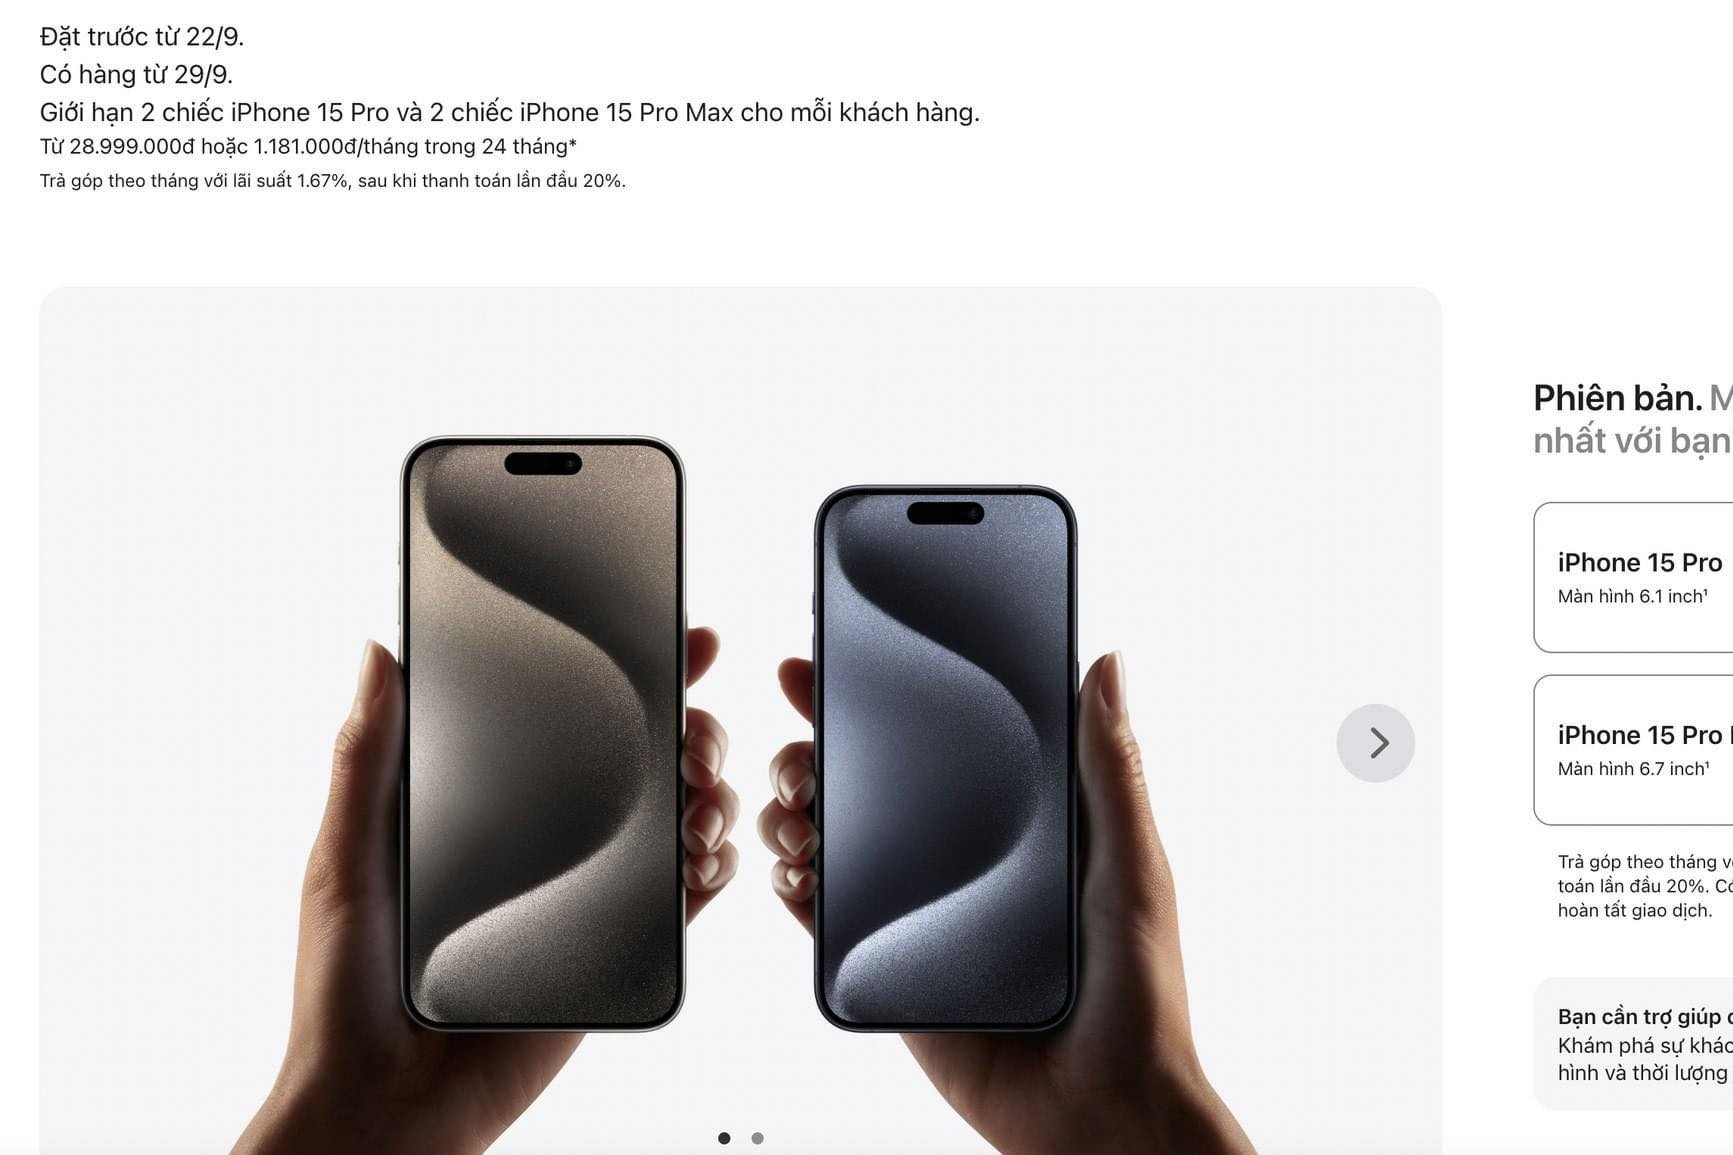 iPhone 15 mở bán tại Việt Nam từ 29/9, giá cao nhất là 46,999 triệu đồng